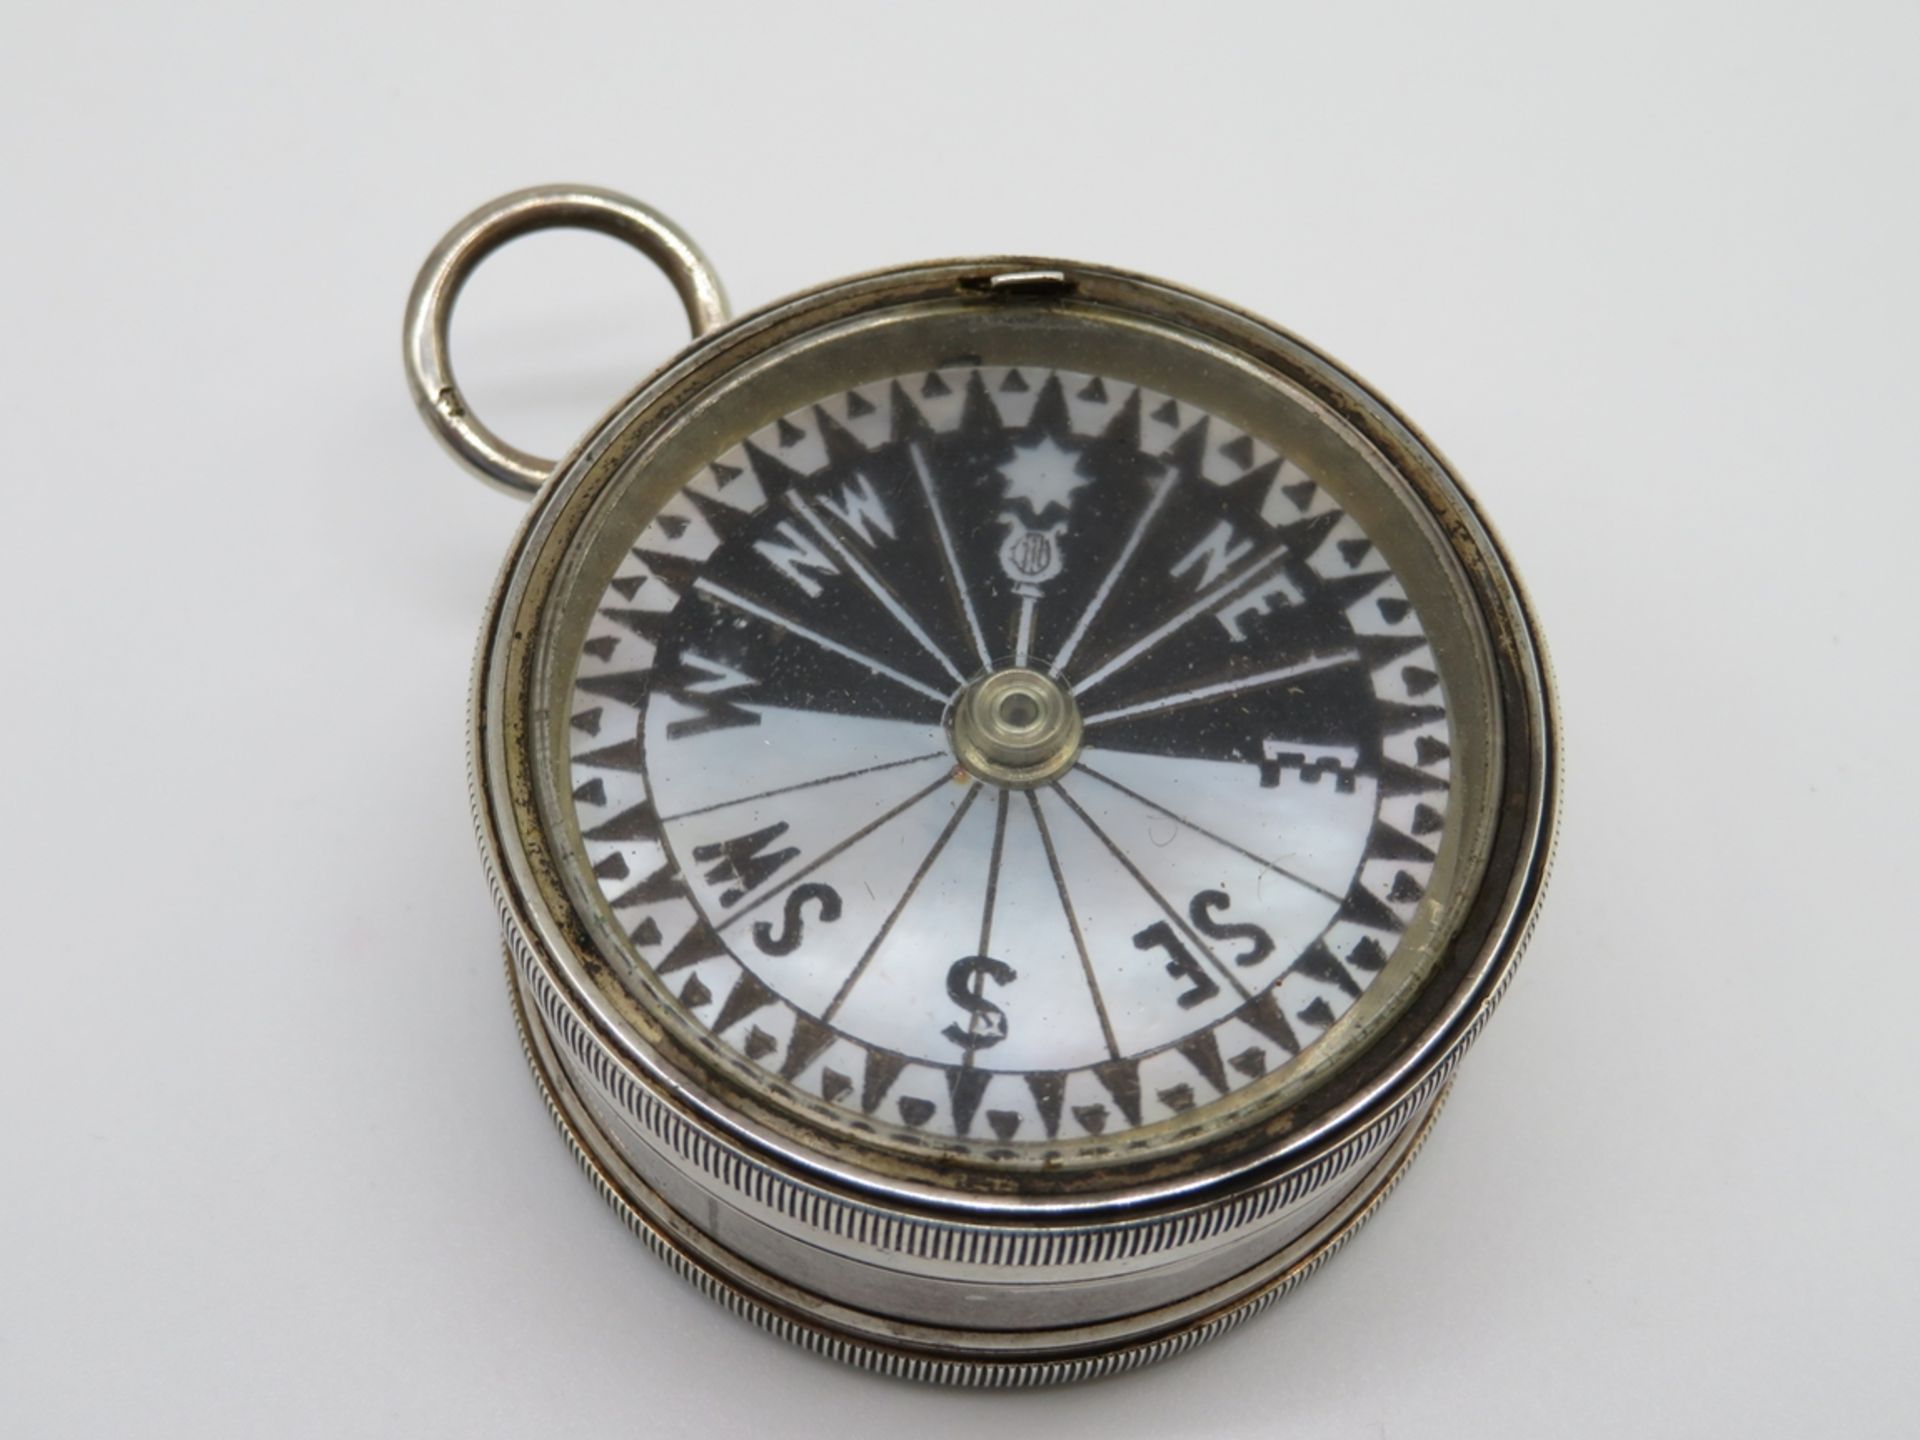 Taschenkompass und Barometer, England, um 1900, Silbergehäuse, in Perlmutt eingelegt, sign. "J. Hic - Bild 2 aus 2